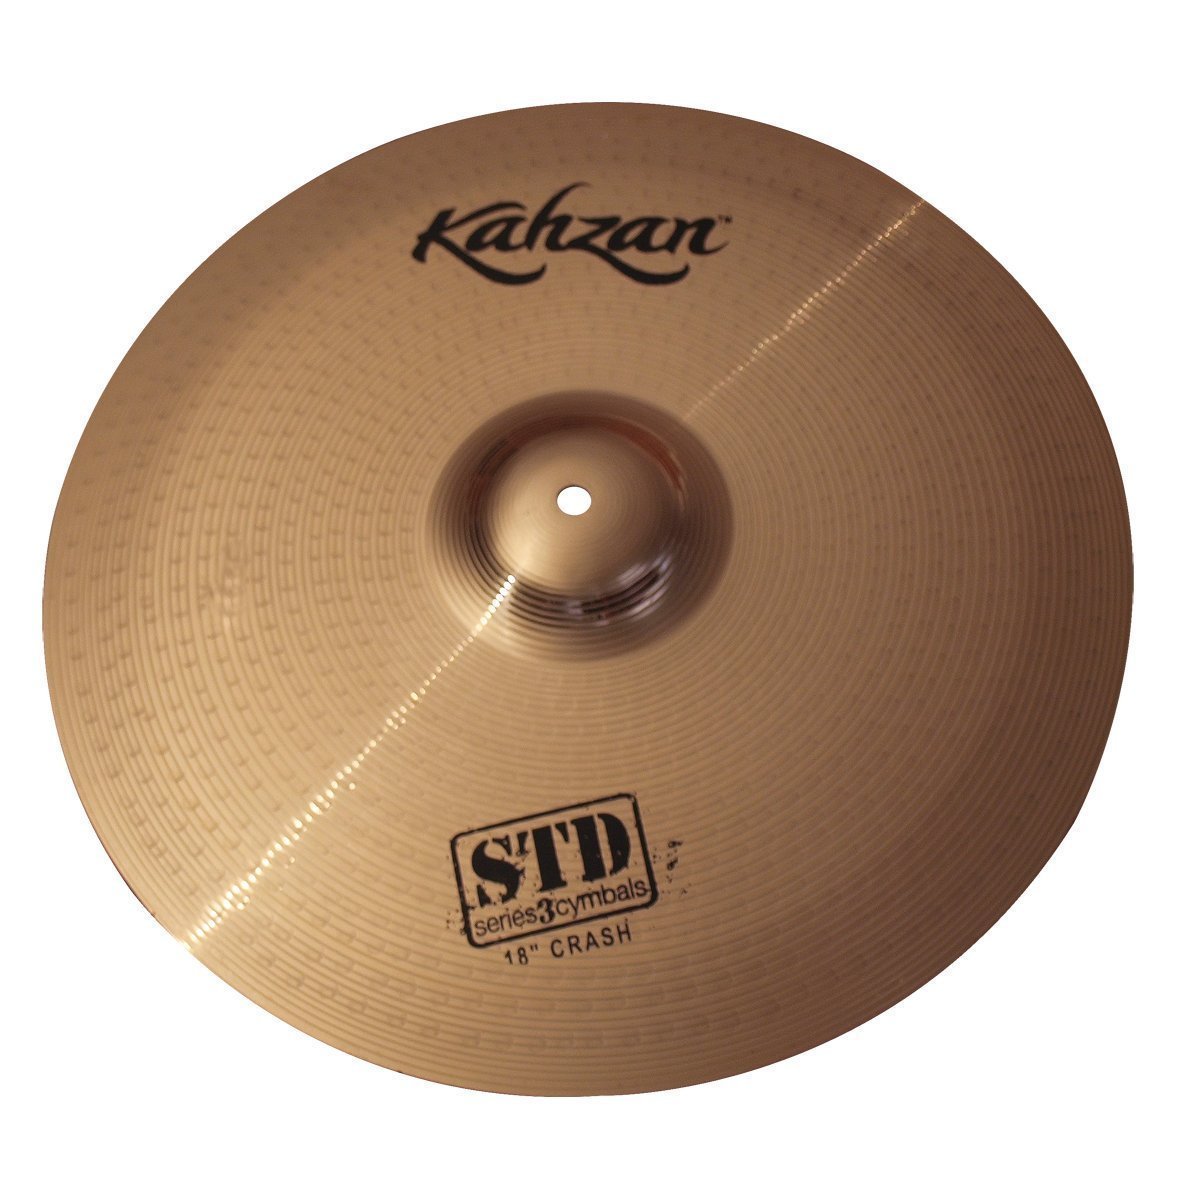 Kahzan 'STD-3 Series' Crash Cymbal (18")-KC-STD3-18C